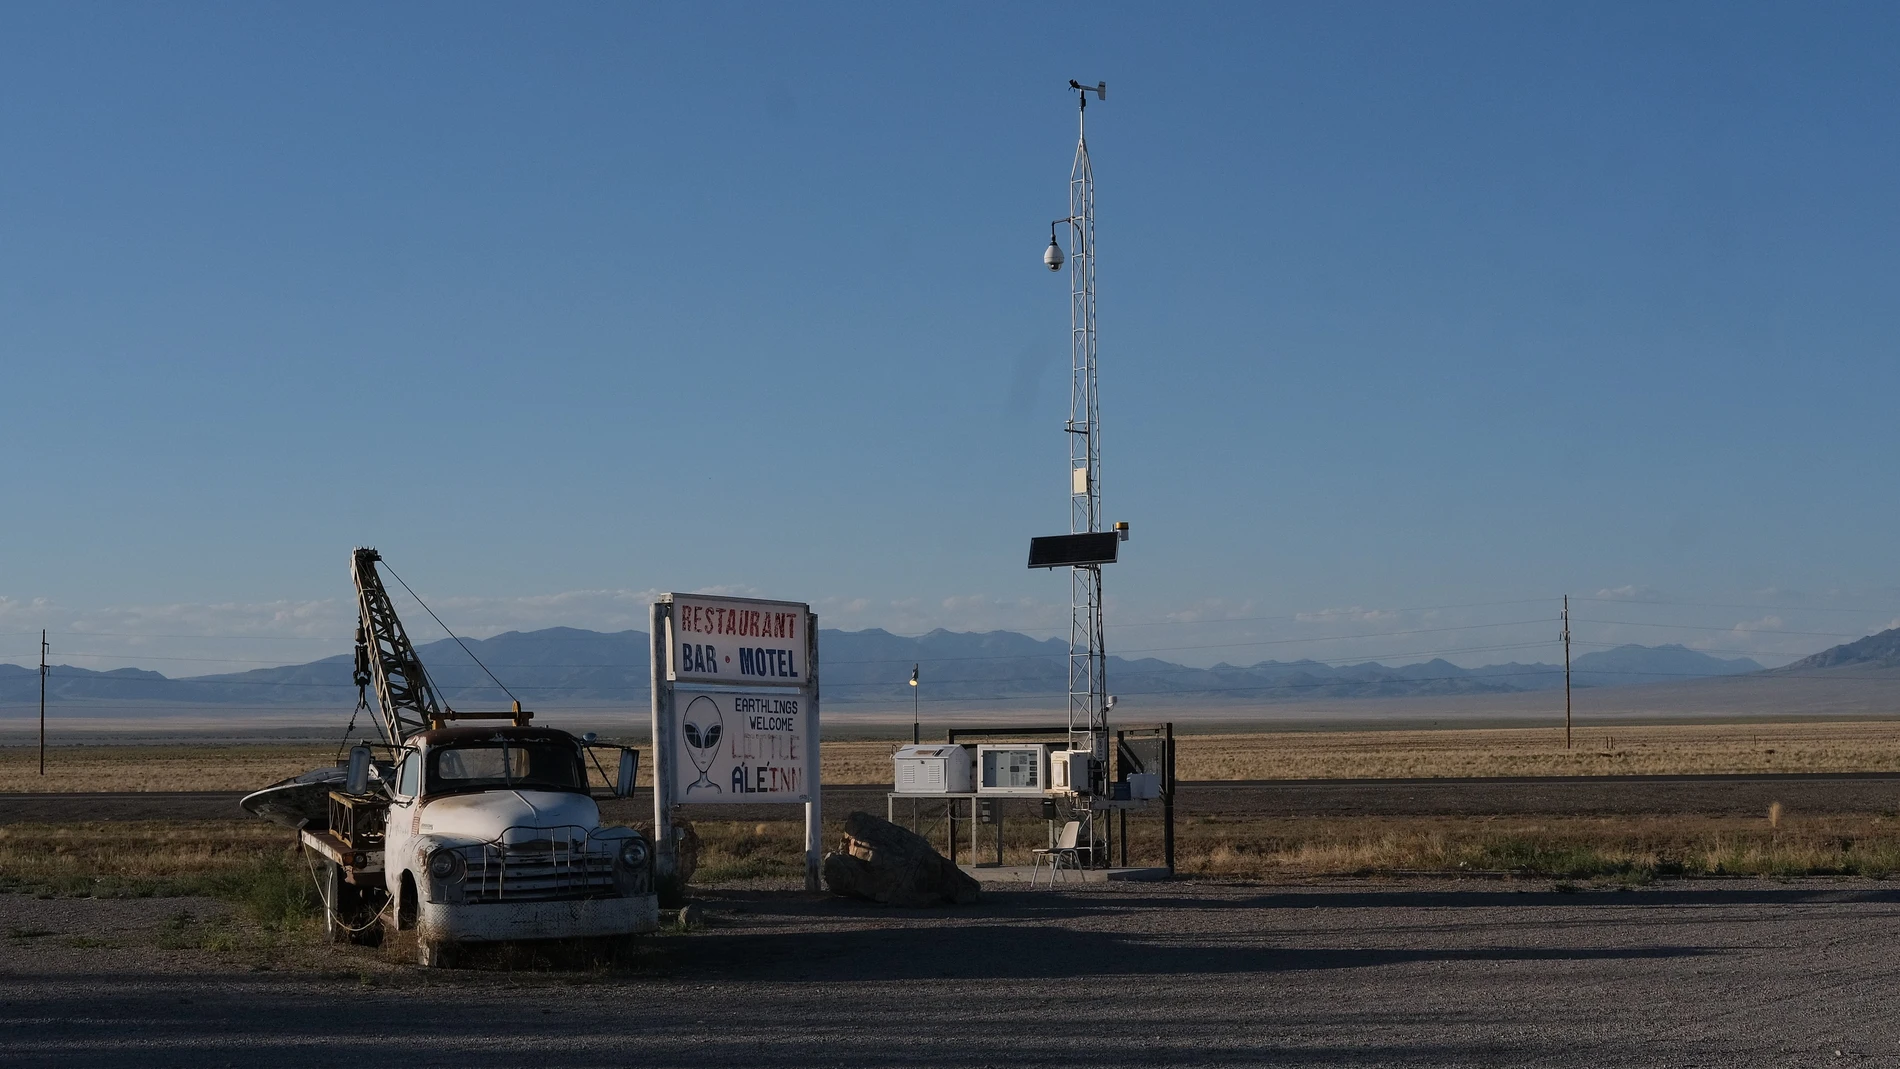 ACOMPAÑA CRÓNICA: EEUU OVNIS. AME791. RACHEL (ESTADOS UNIDOS), 14/08/2023.- Fotografía del motel Little Ale Inn, el 9 de agosto de 2023, ubicado en Rachel, en Nevada (Estados Unidos). Una furgoneta negra custodia 24 horas una empedrada vereda en las montañas del estado de Nevada (EEUU) por la que coyotes y antílopes campan a su antojo hasta darse de bruces con la entrada de la base militar más enigmática del mundo: su nombre es el Área 51. EFE/ Guillermo Azábal 